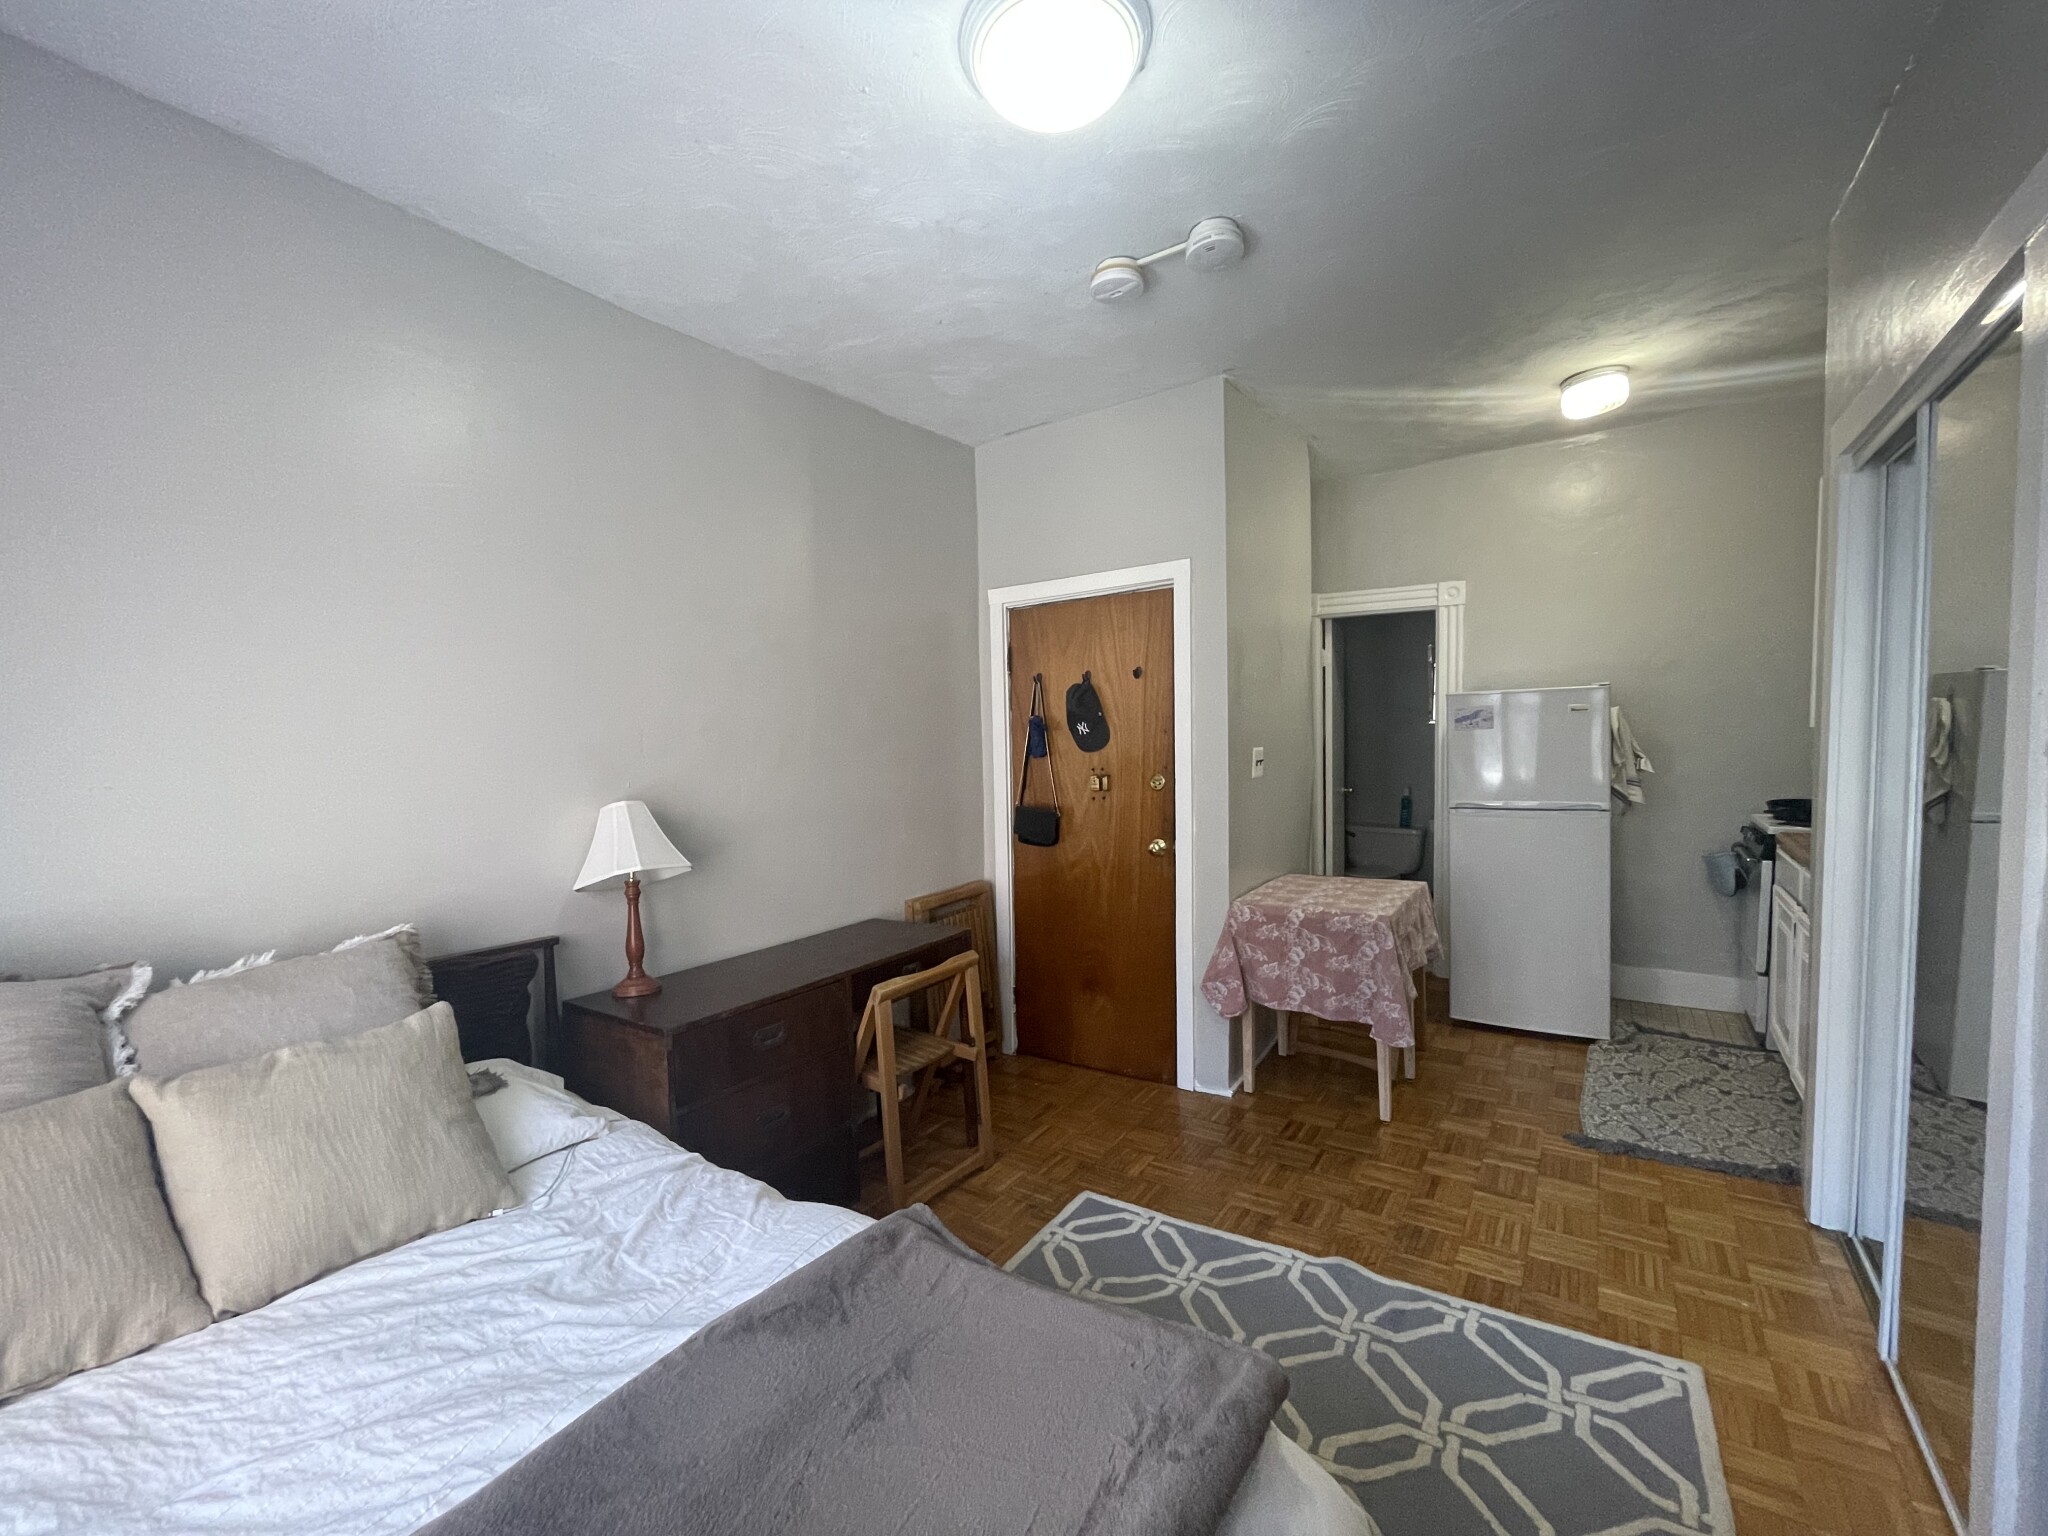 Photos of apartment on Sudbury St.,Boston MA 02114